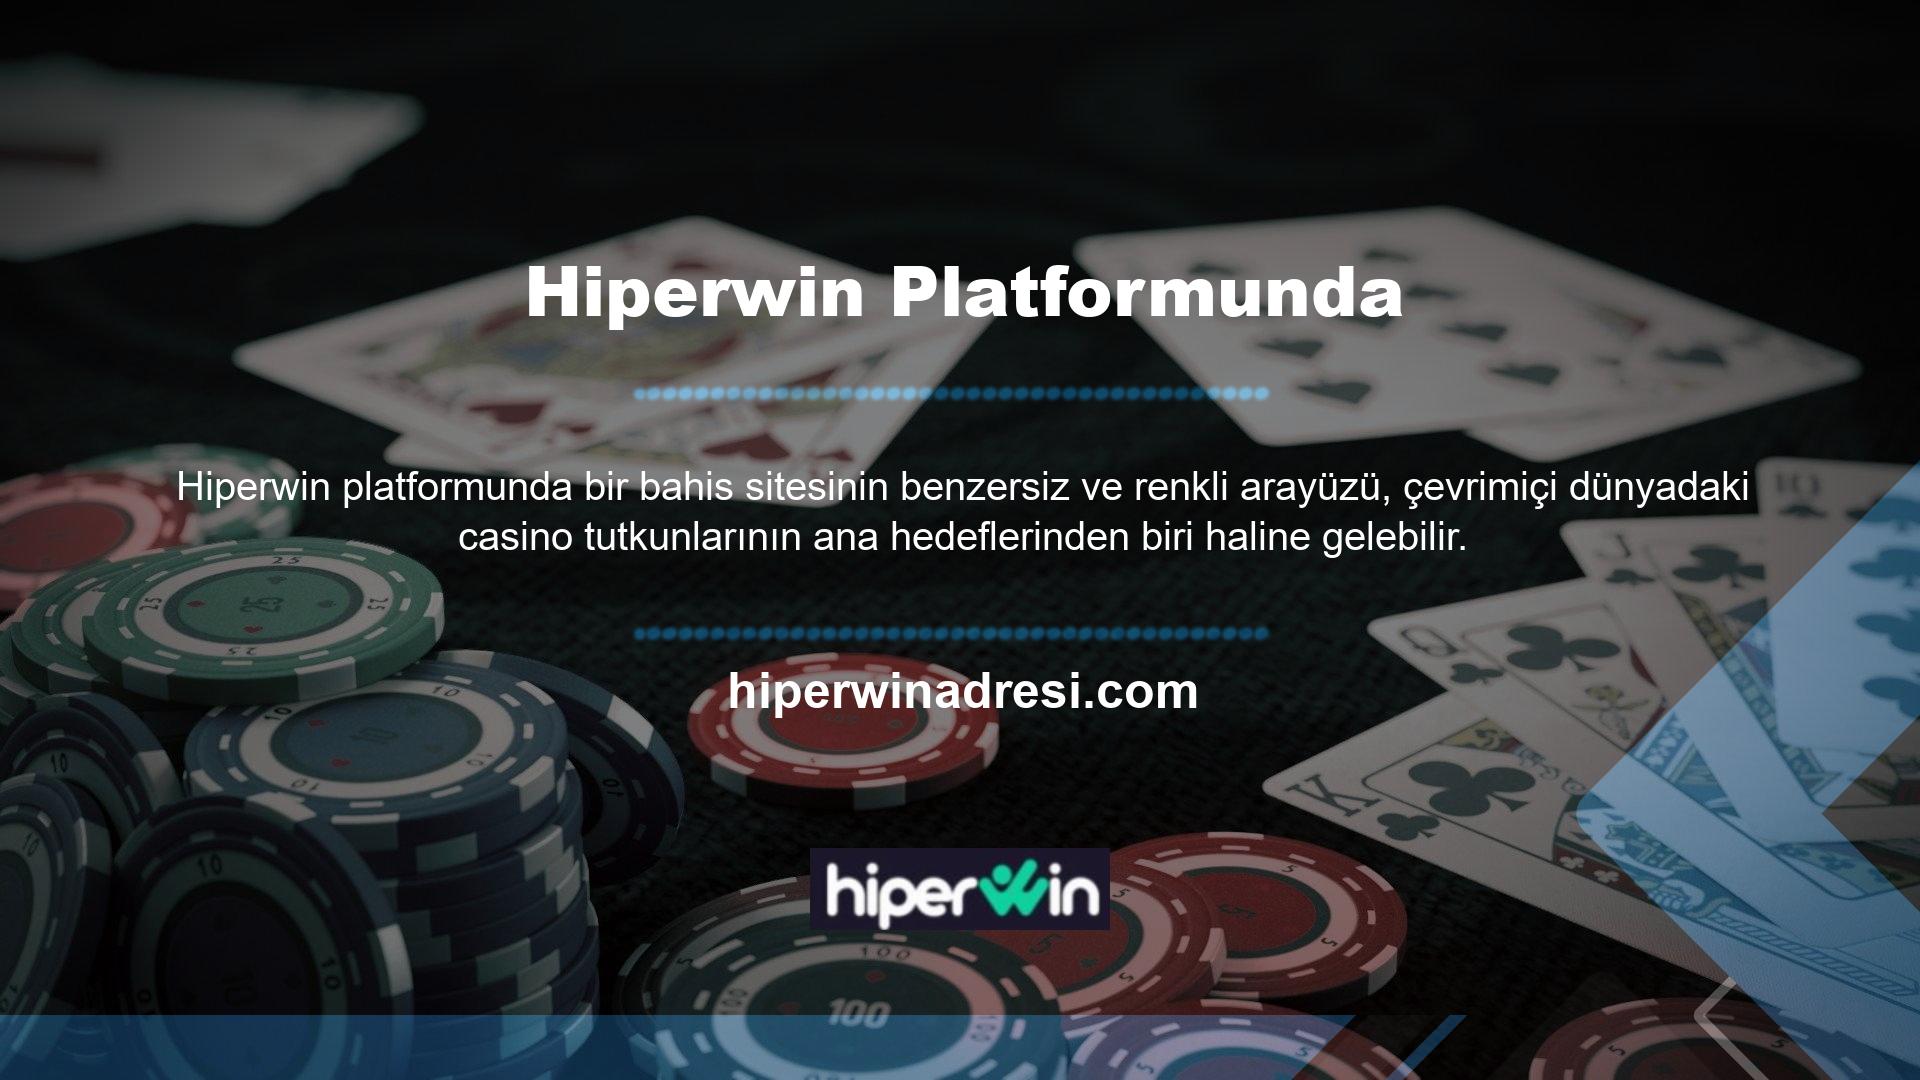 Hiperwin web sitesi, müşterilerine farklı oyun türlerini sunmak için çeşitli oyunlara sahiptir